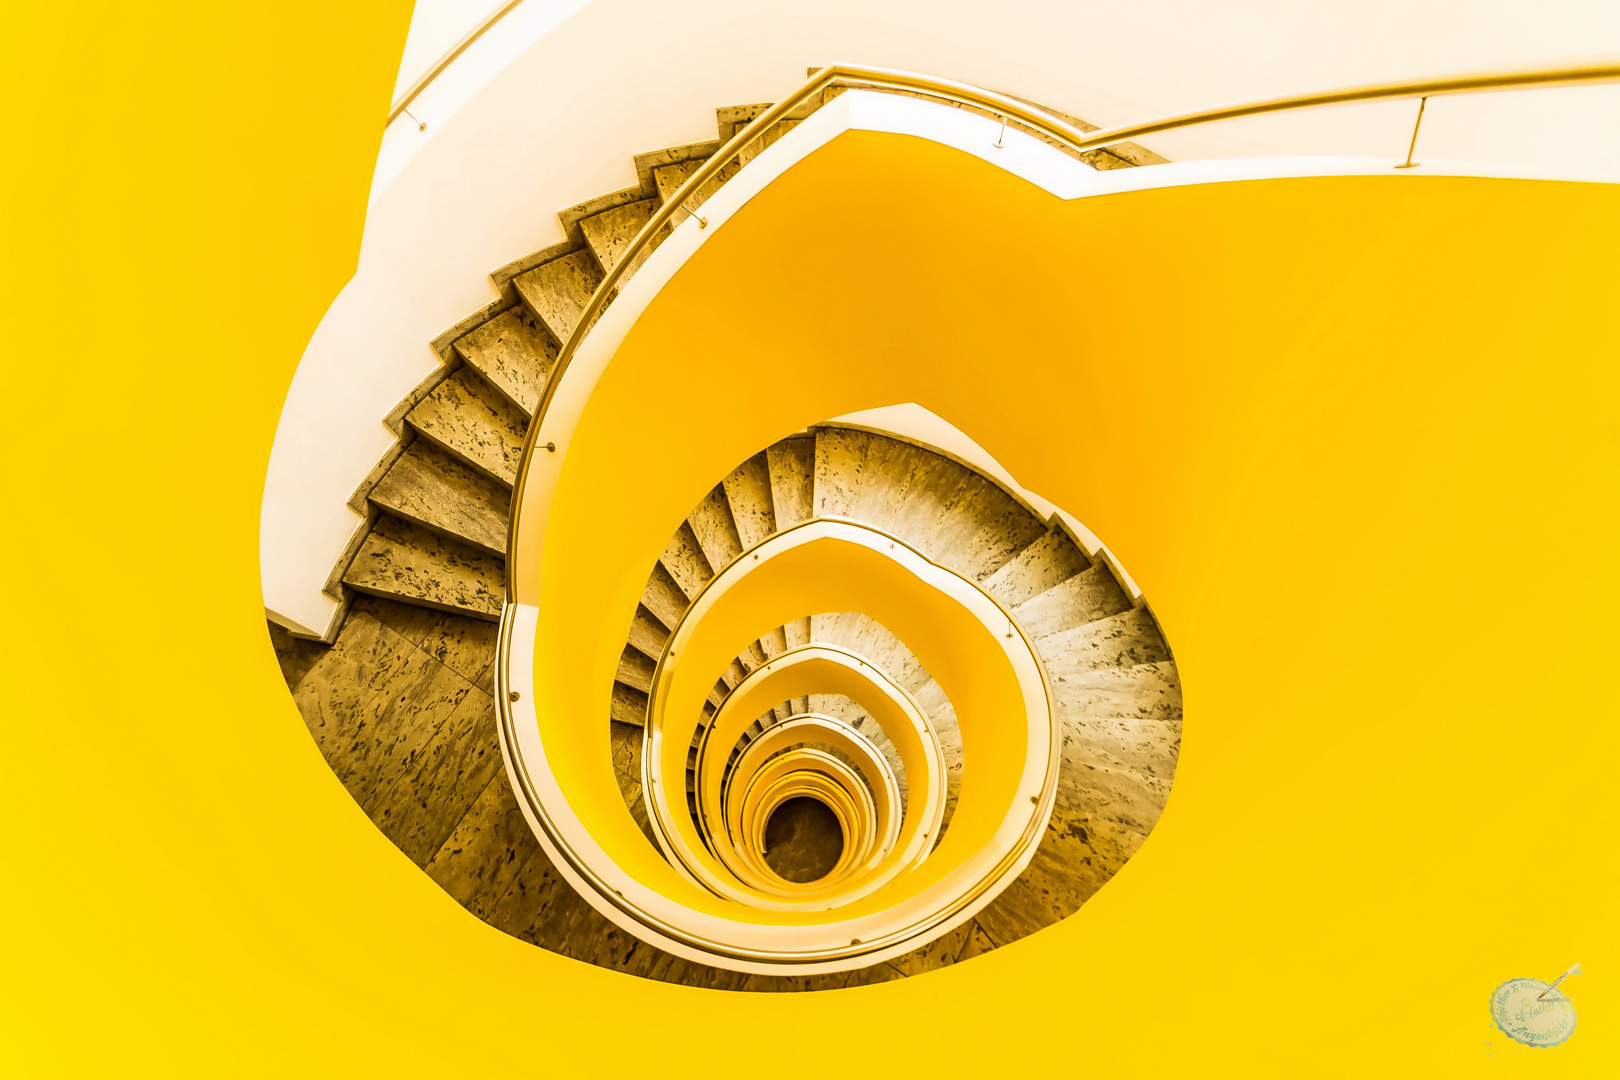 Treppenauge gelb